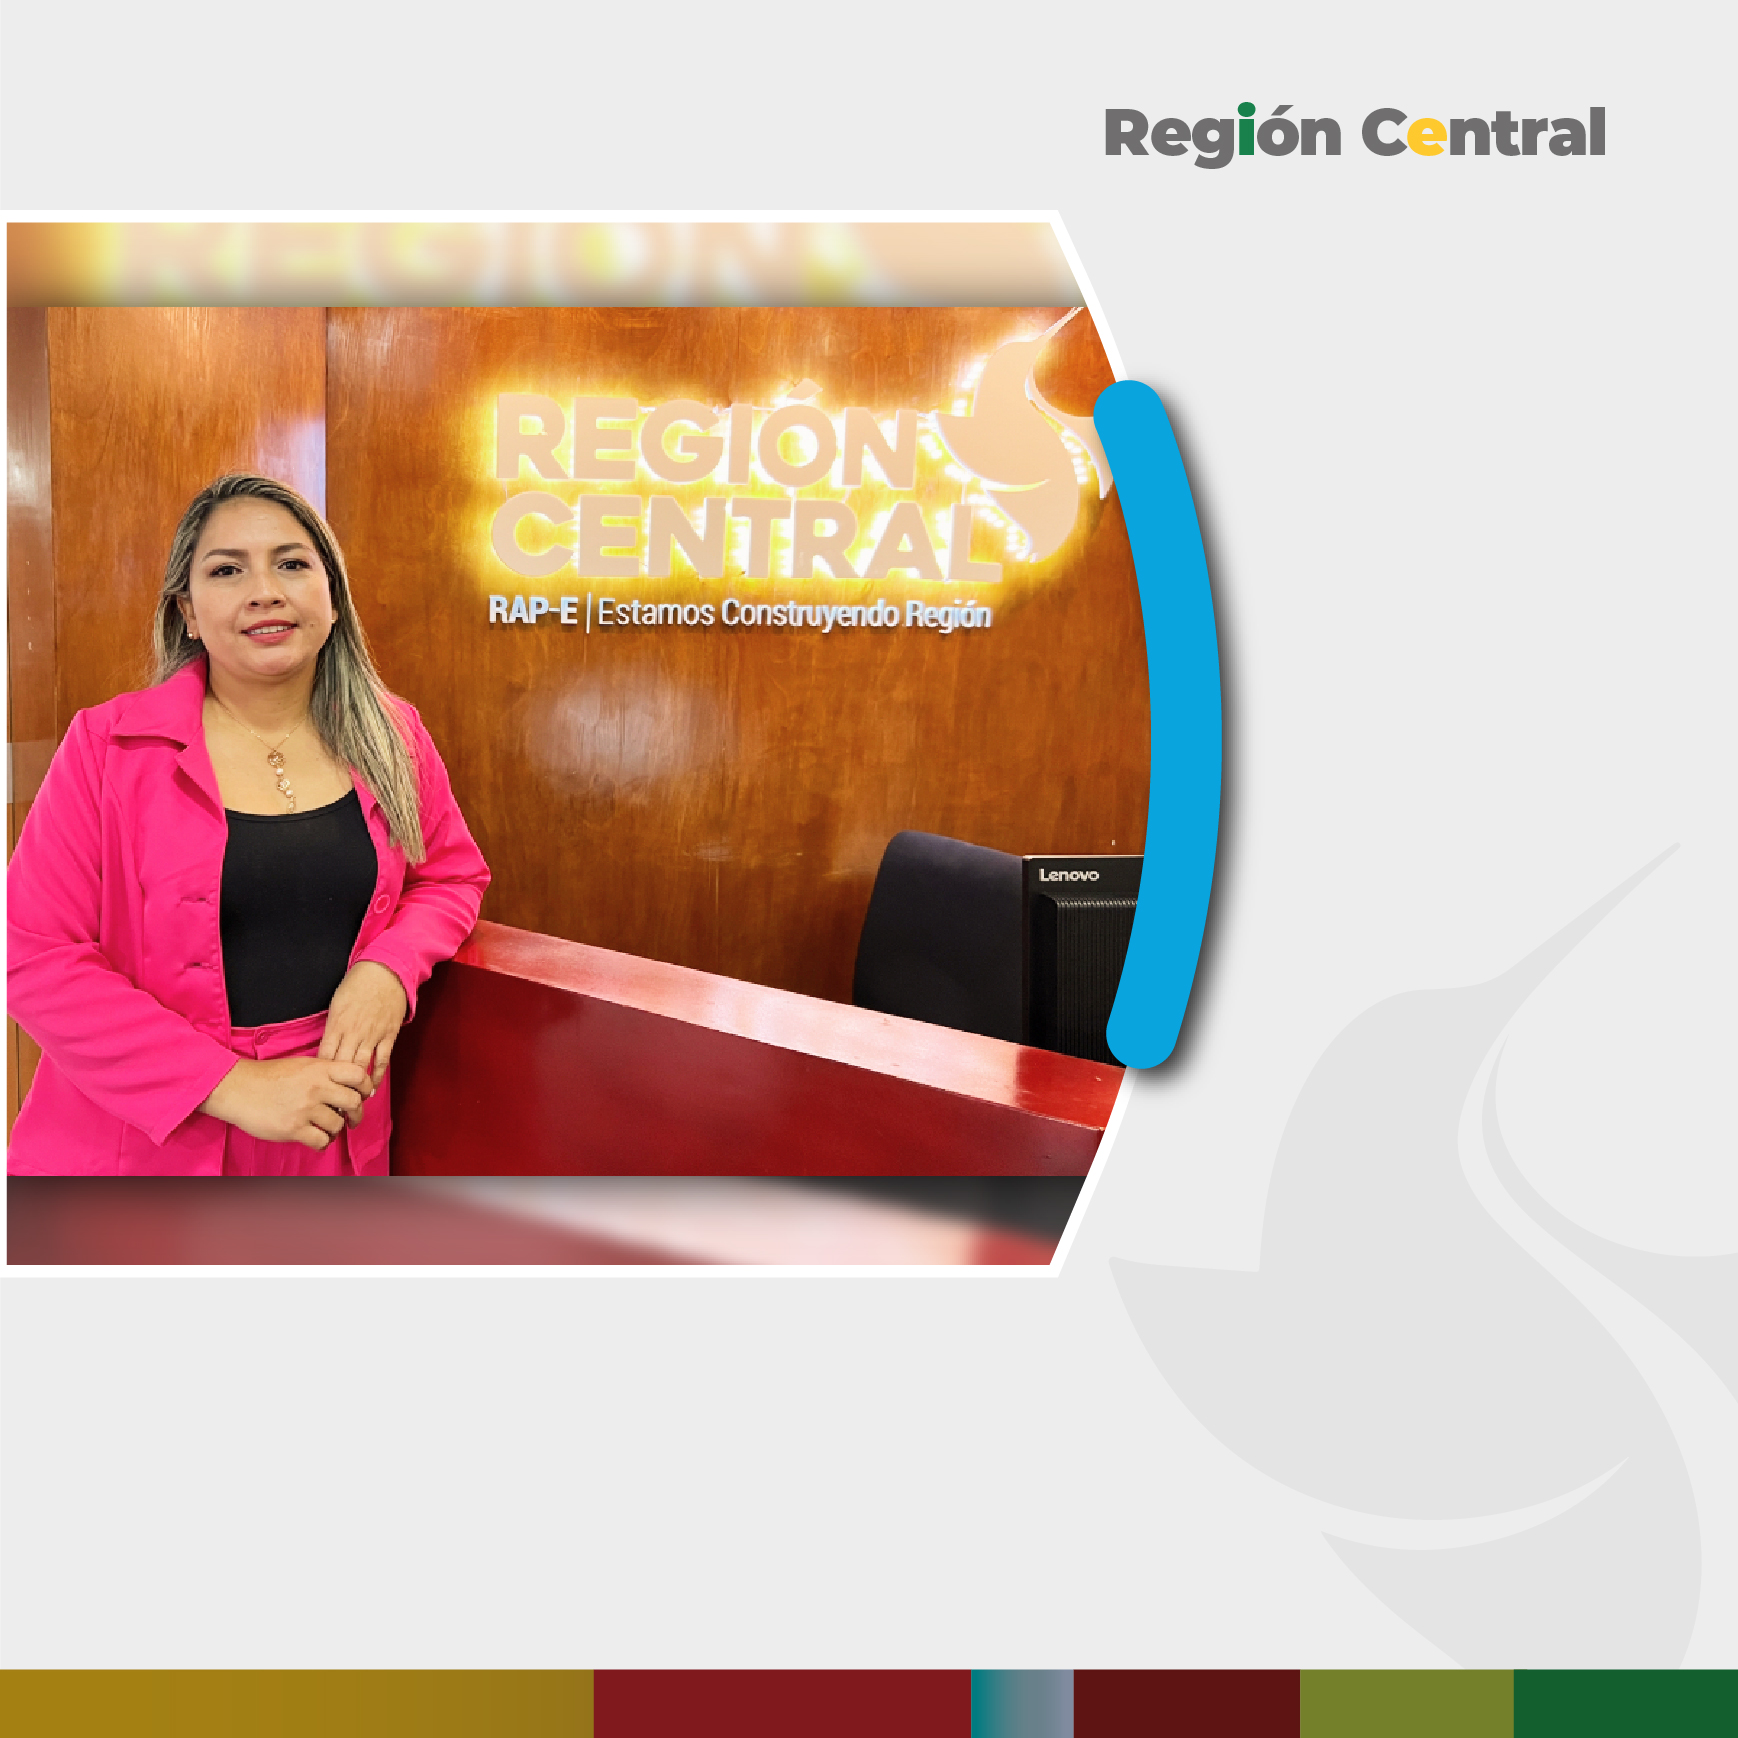 Sandra Milena Camelo Rodríguez apoyará la gestión de la dirección administrativa y financiera de la RAP-E